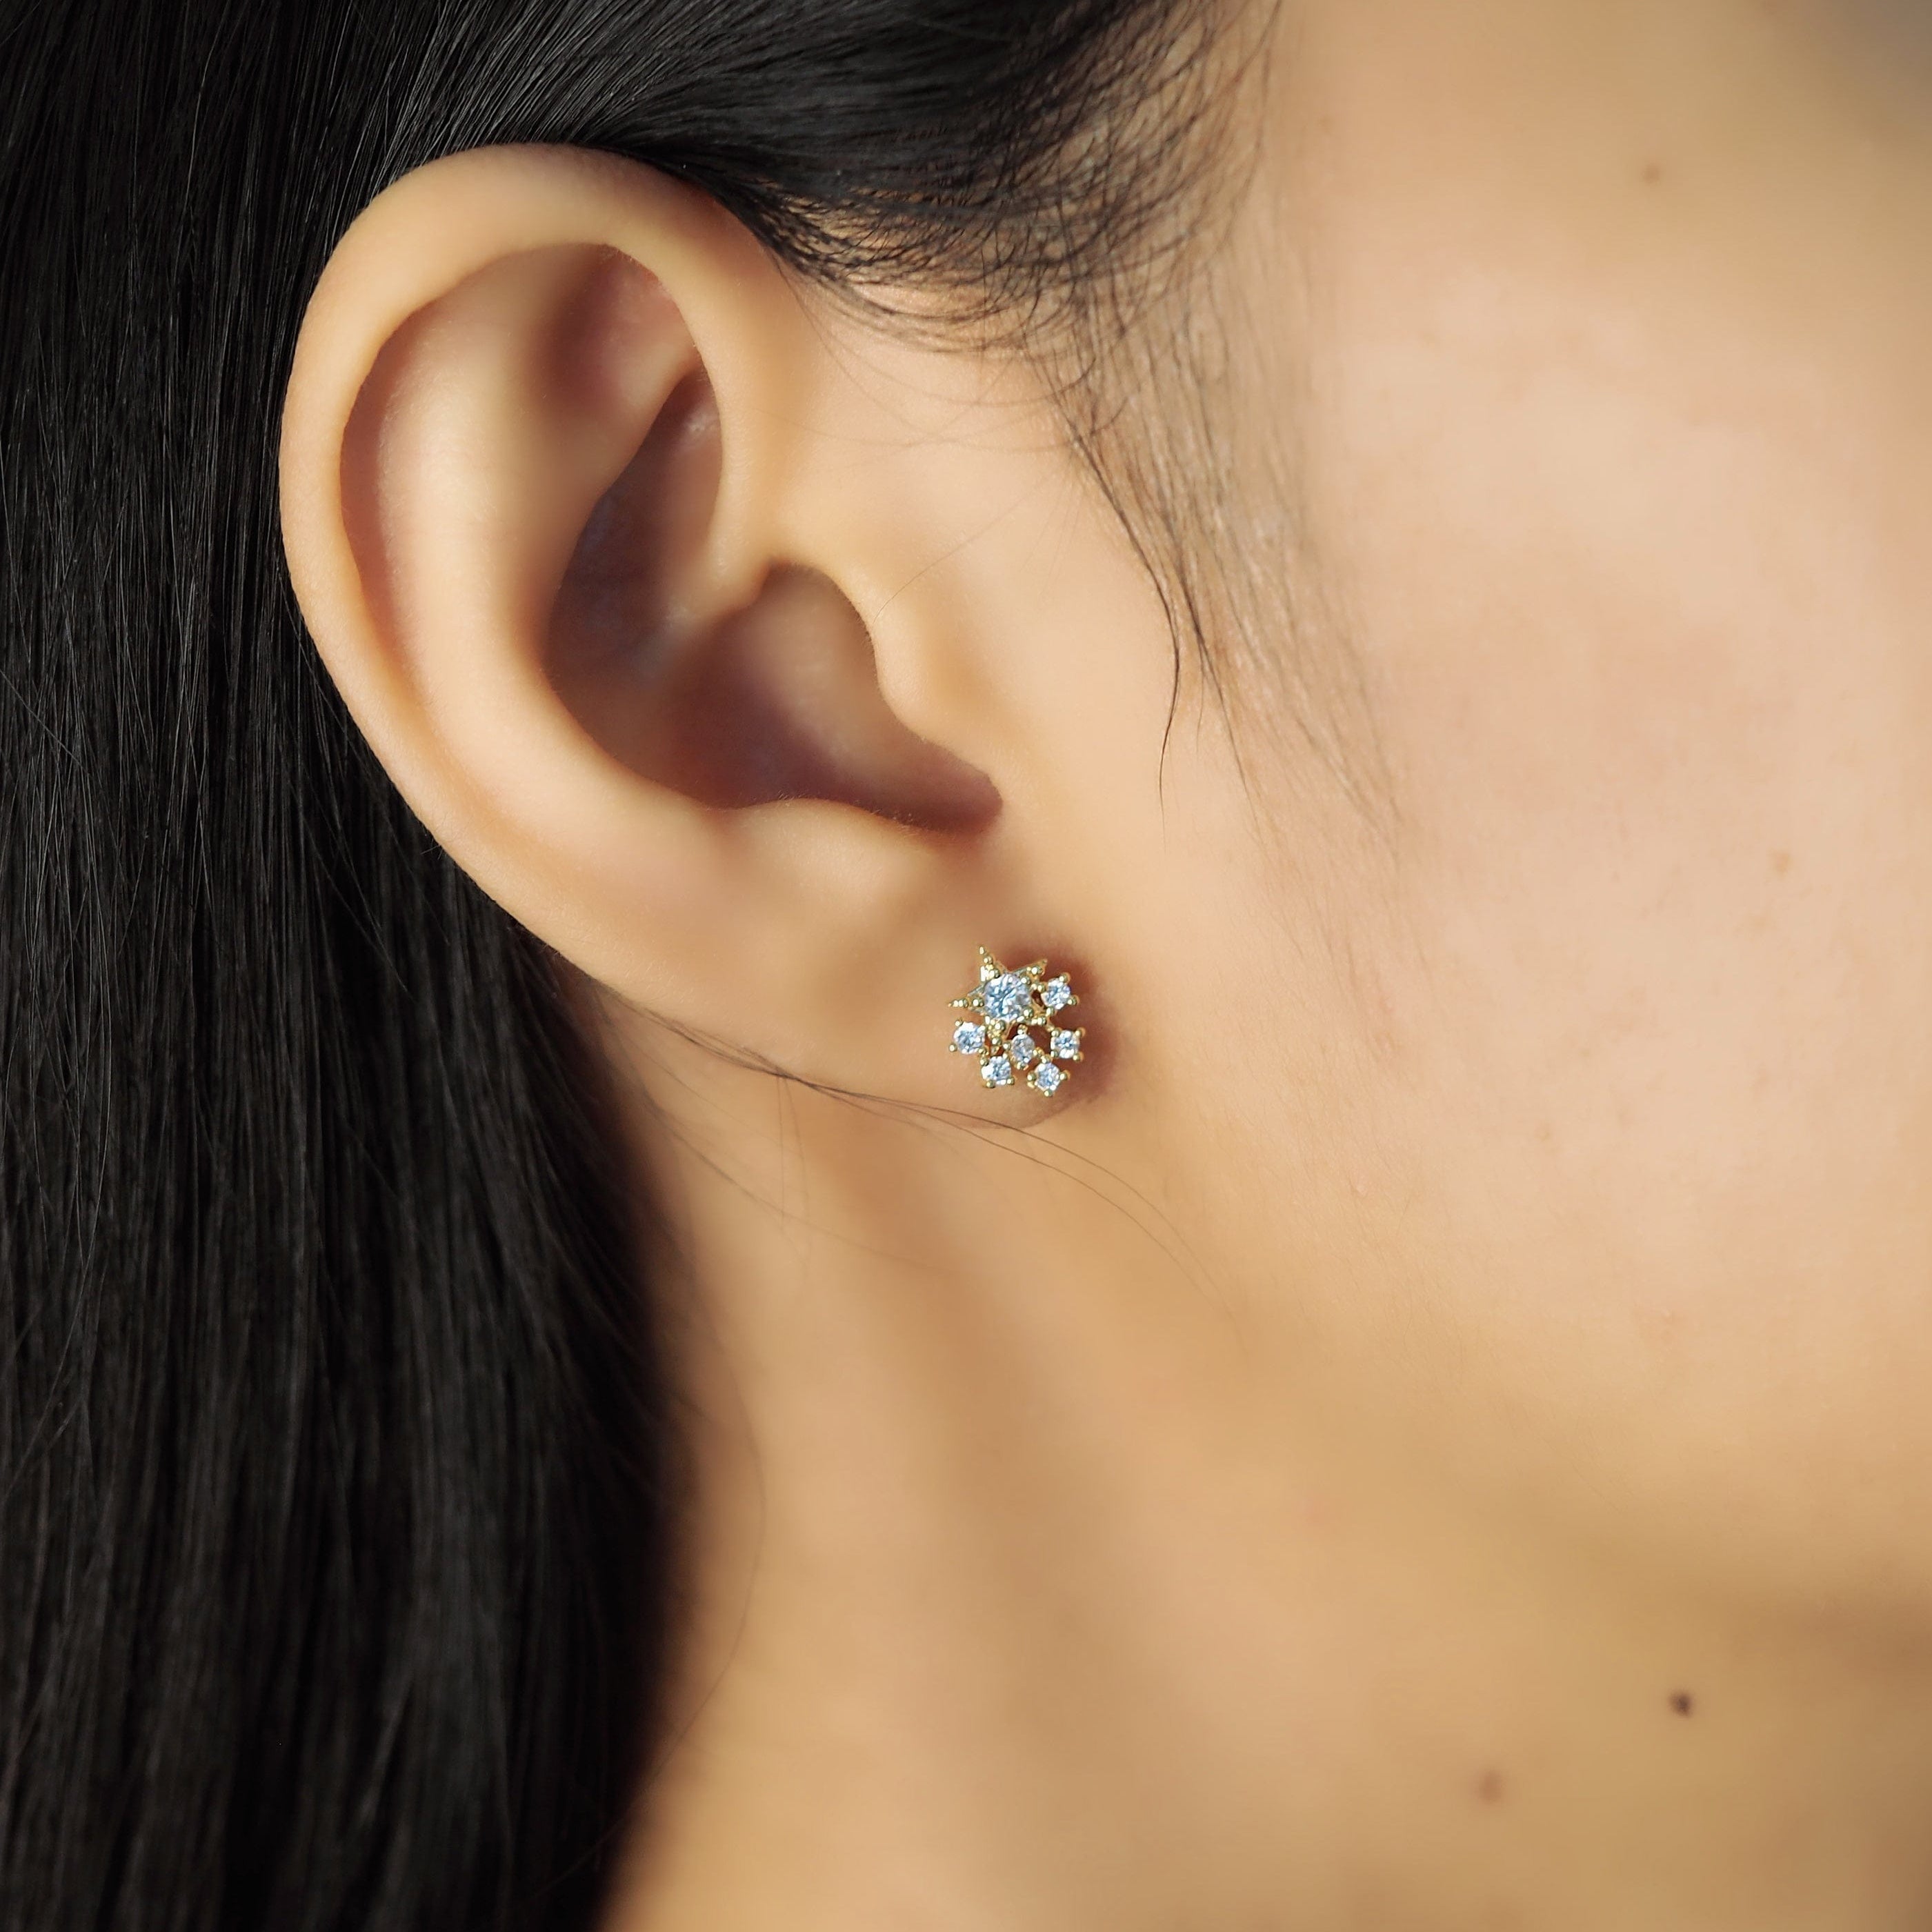 TAI JEWELRY Earrings Stardust Cluster Earrings